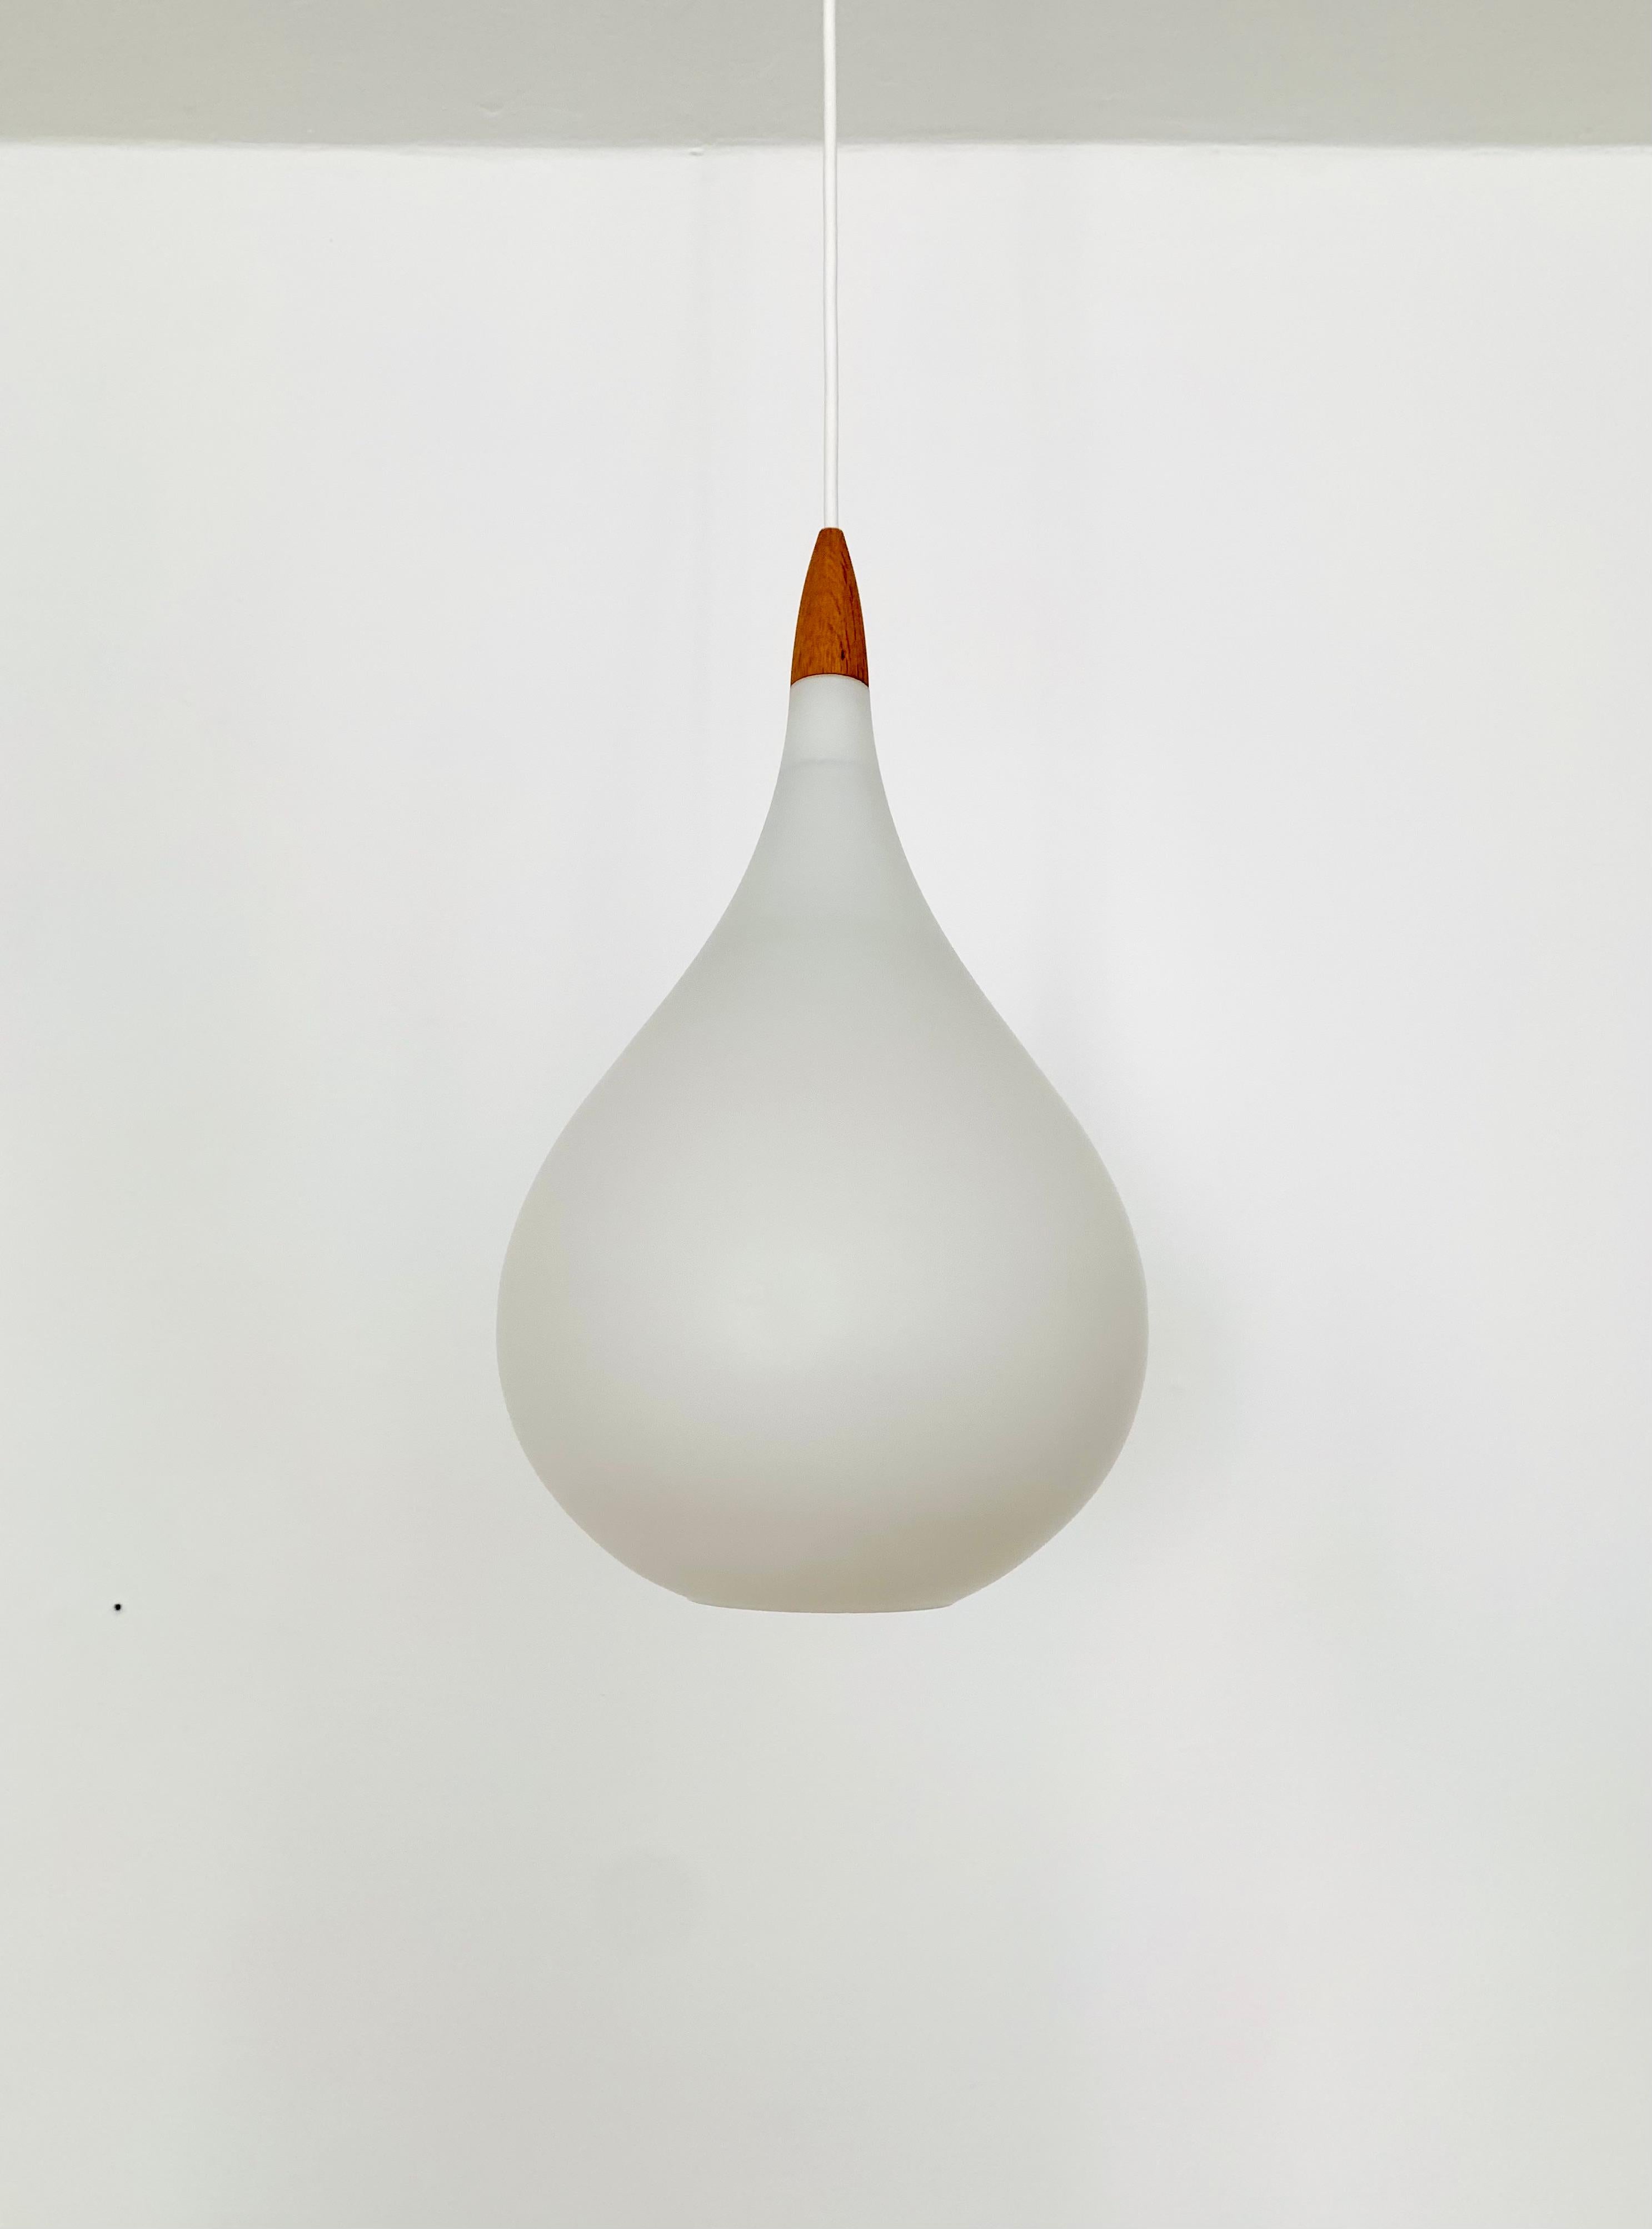 Merveilleuses lampes suspendues suédoises en verre opale des années 1960.
Design/One exceptionnellement minimaliste et d'une fantastique élégance.
Très beaux détails en bois de chêne.

Fabricant : Luxe
Design/One : Uno et Östen Kristiansson
Vers